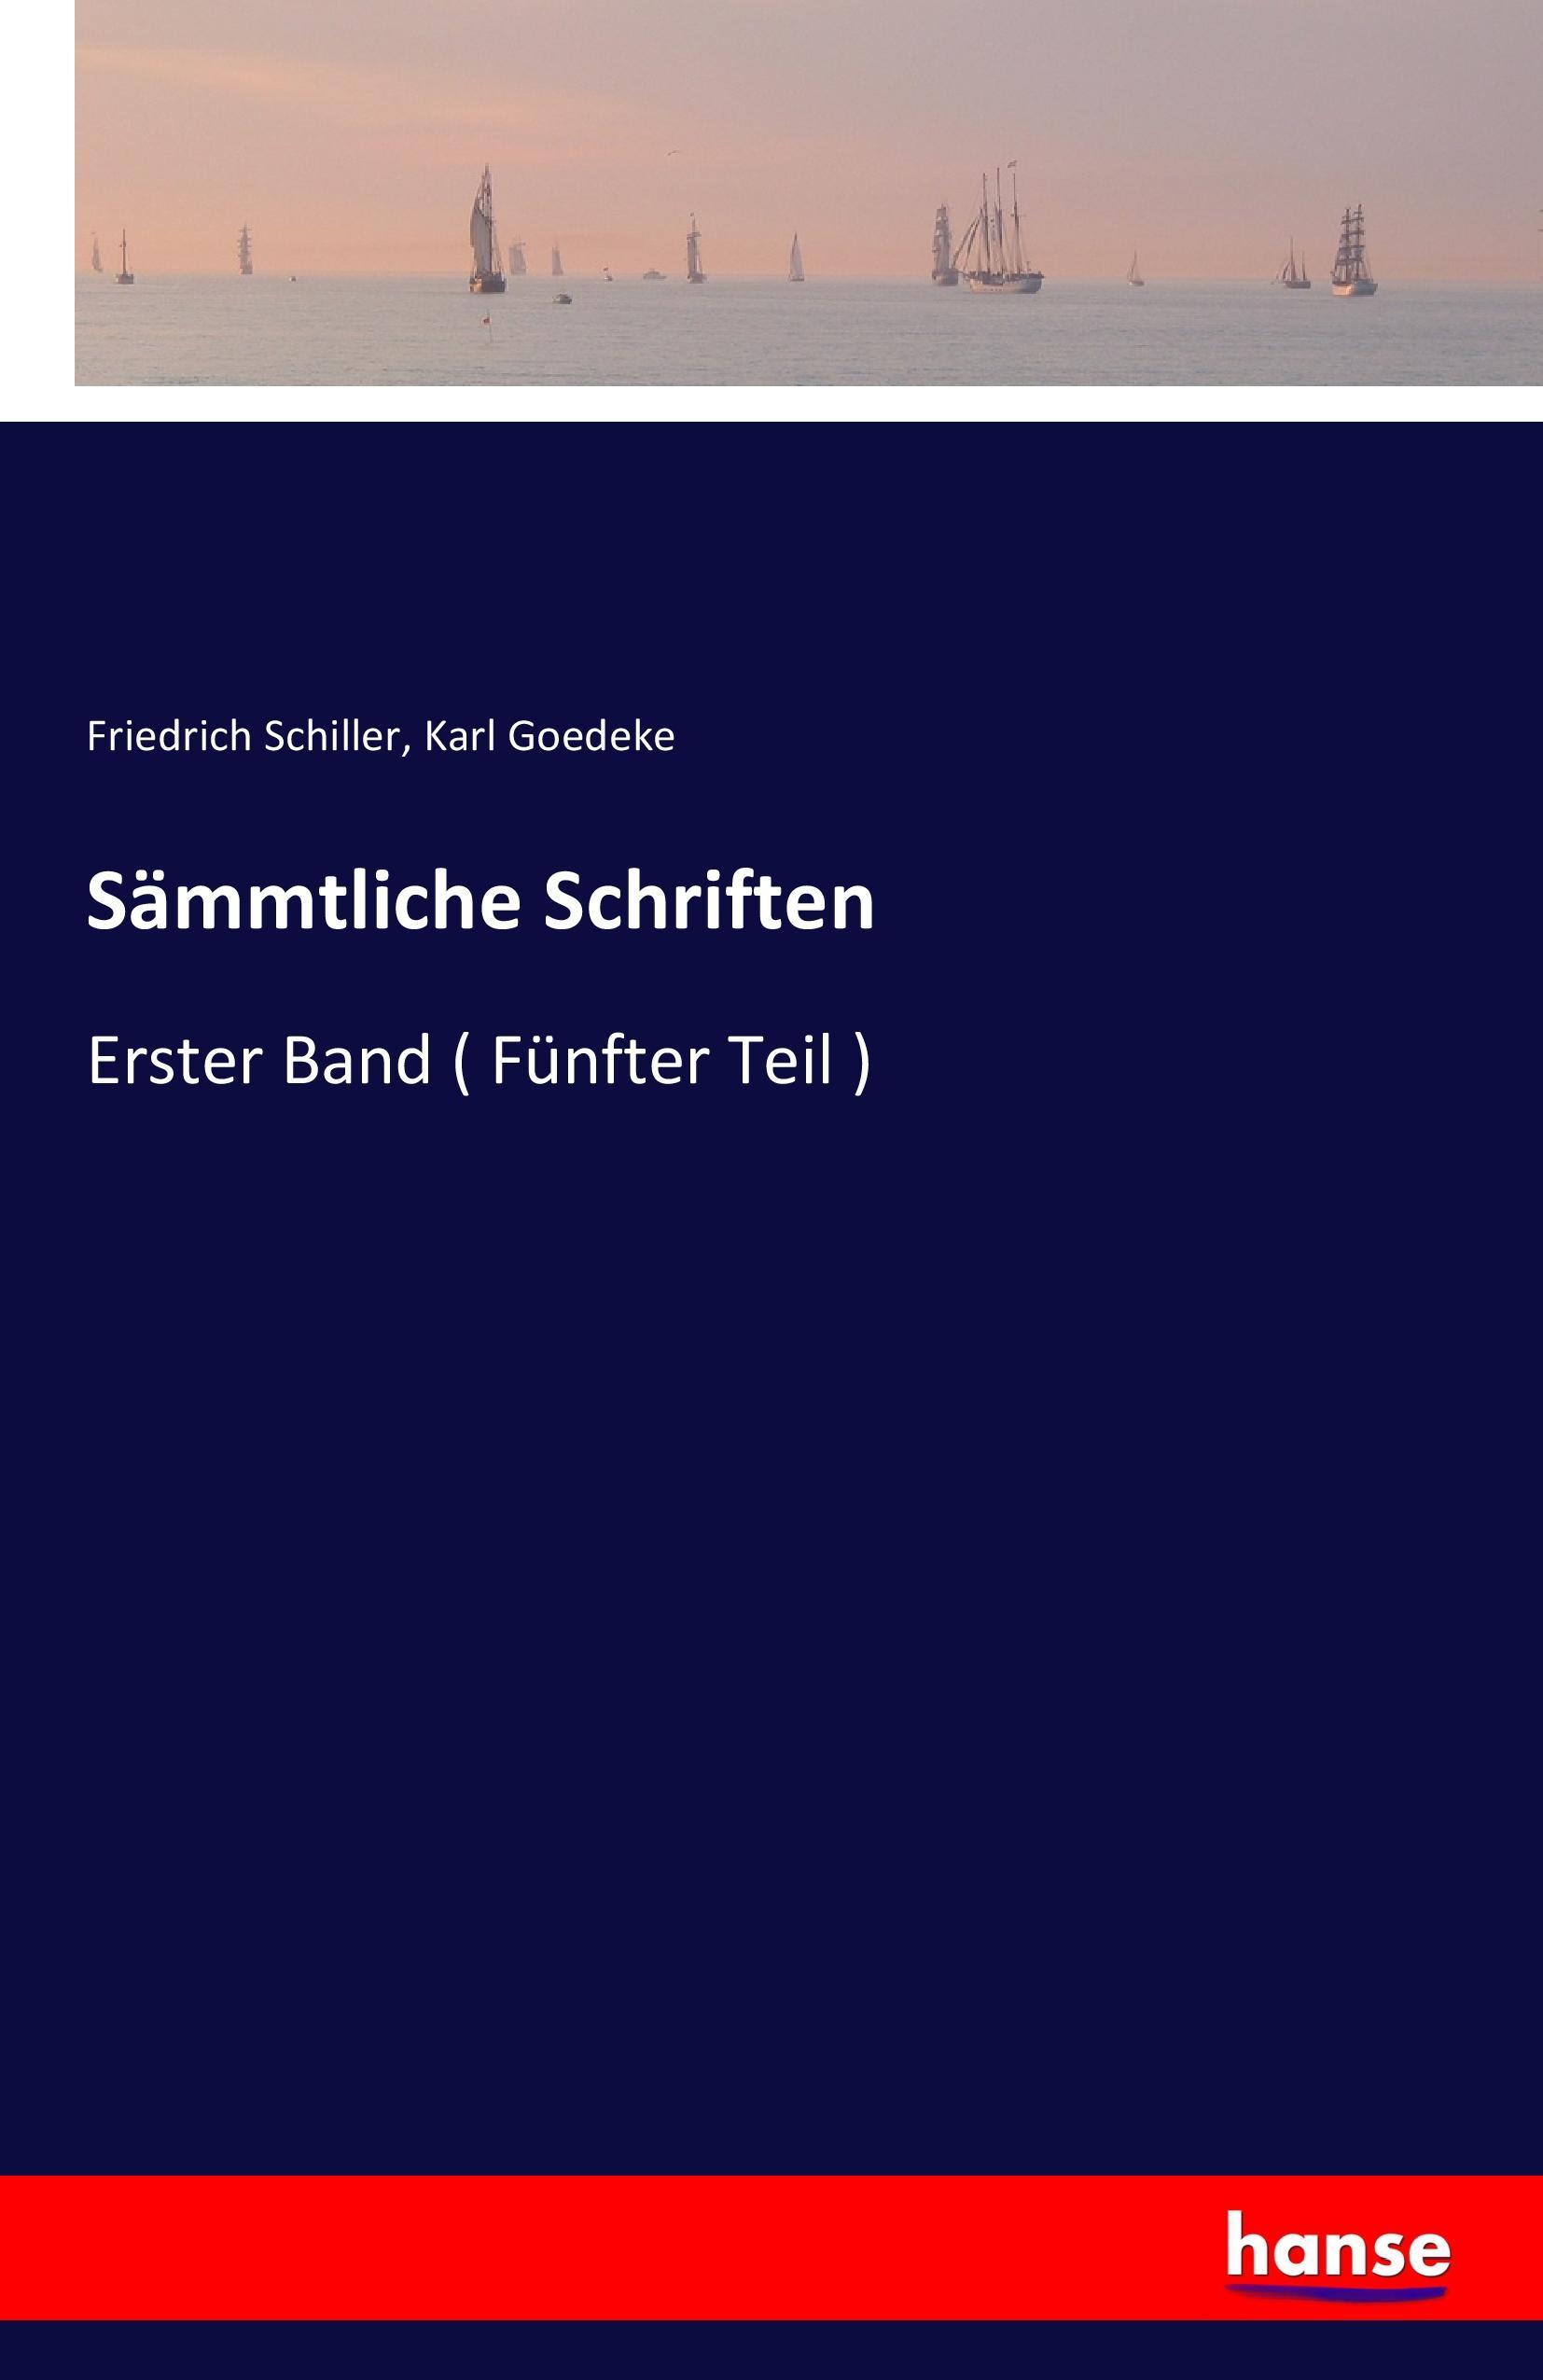 Sämmtliche Schriften | Erster Band ( Fünfter Teil ) | Friedrich Schiller (u. a.) | Taschenbuch | Paperback | 428 S. | Deutsch | 2016 | hansebooks | EAN 9783741133510 - Schiller, Friedrich